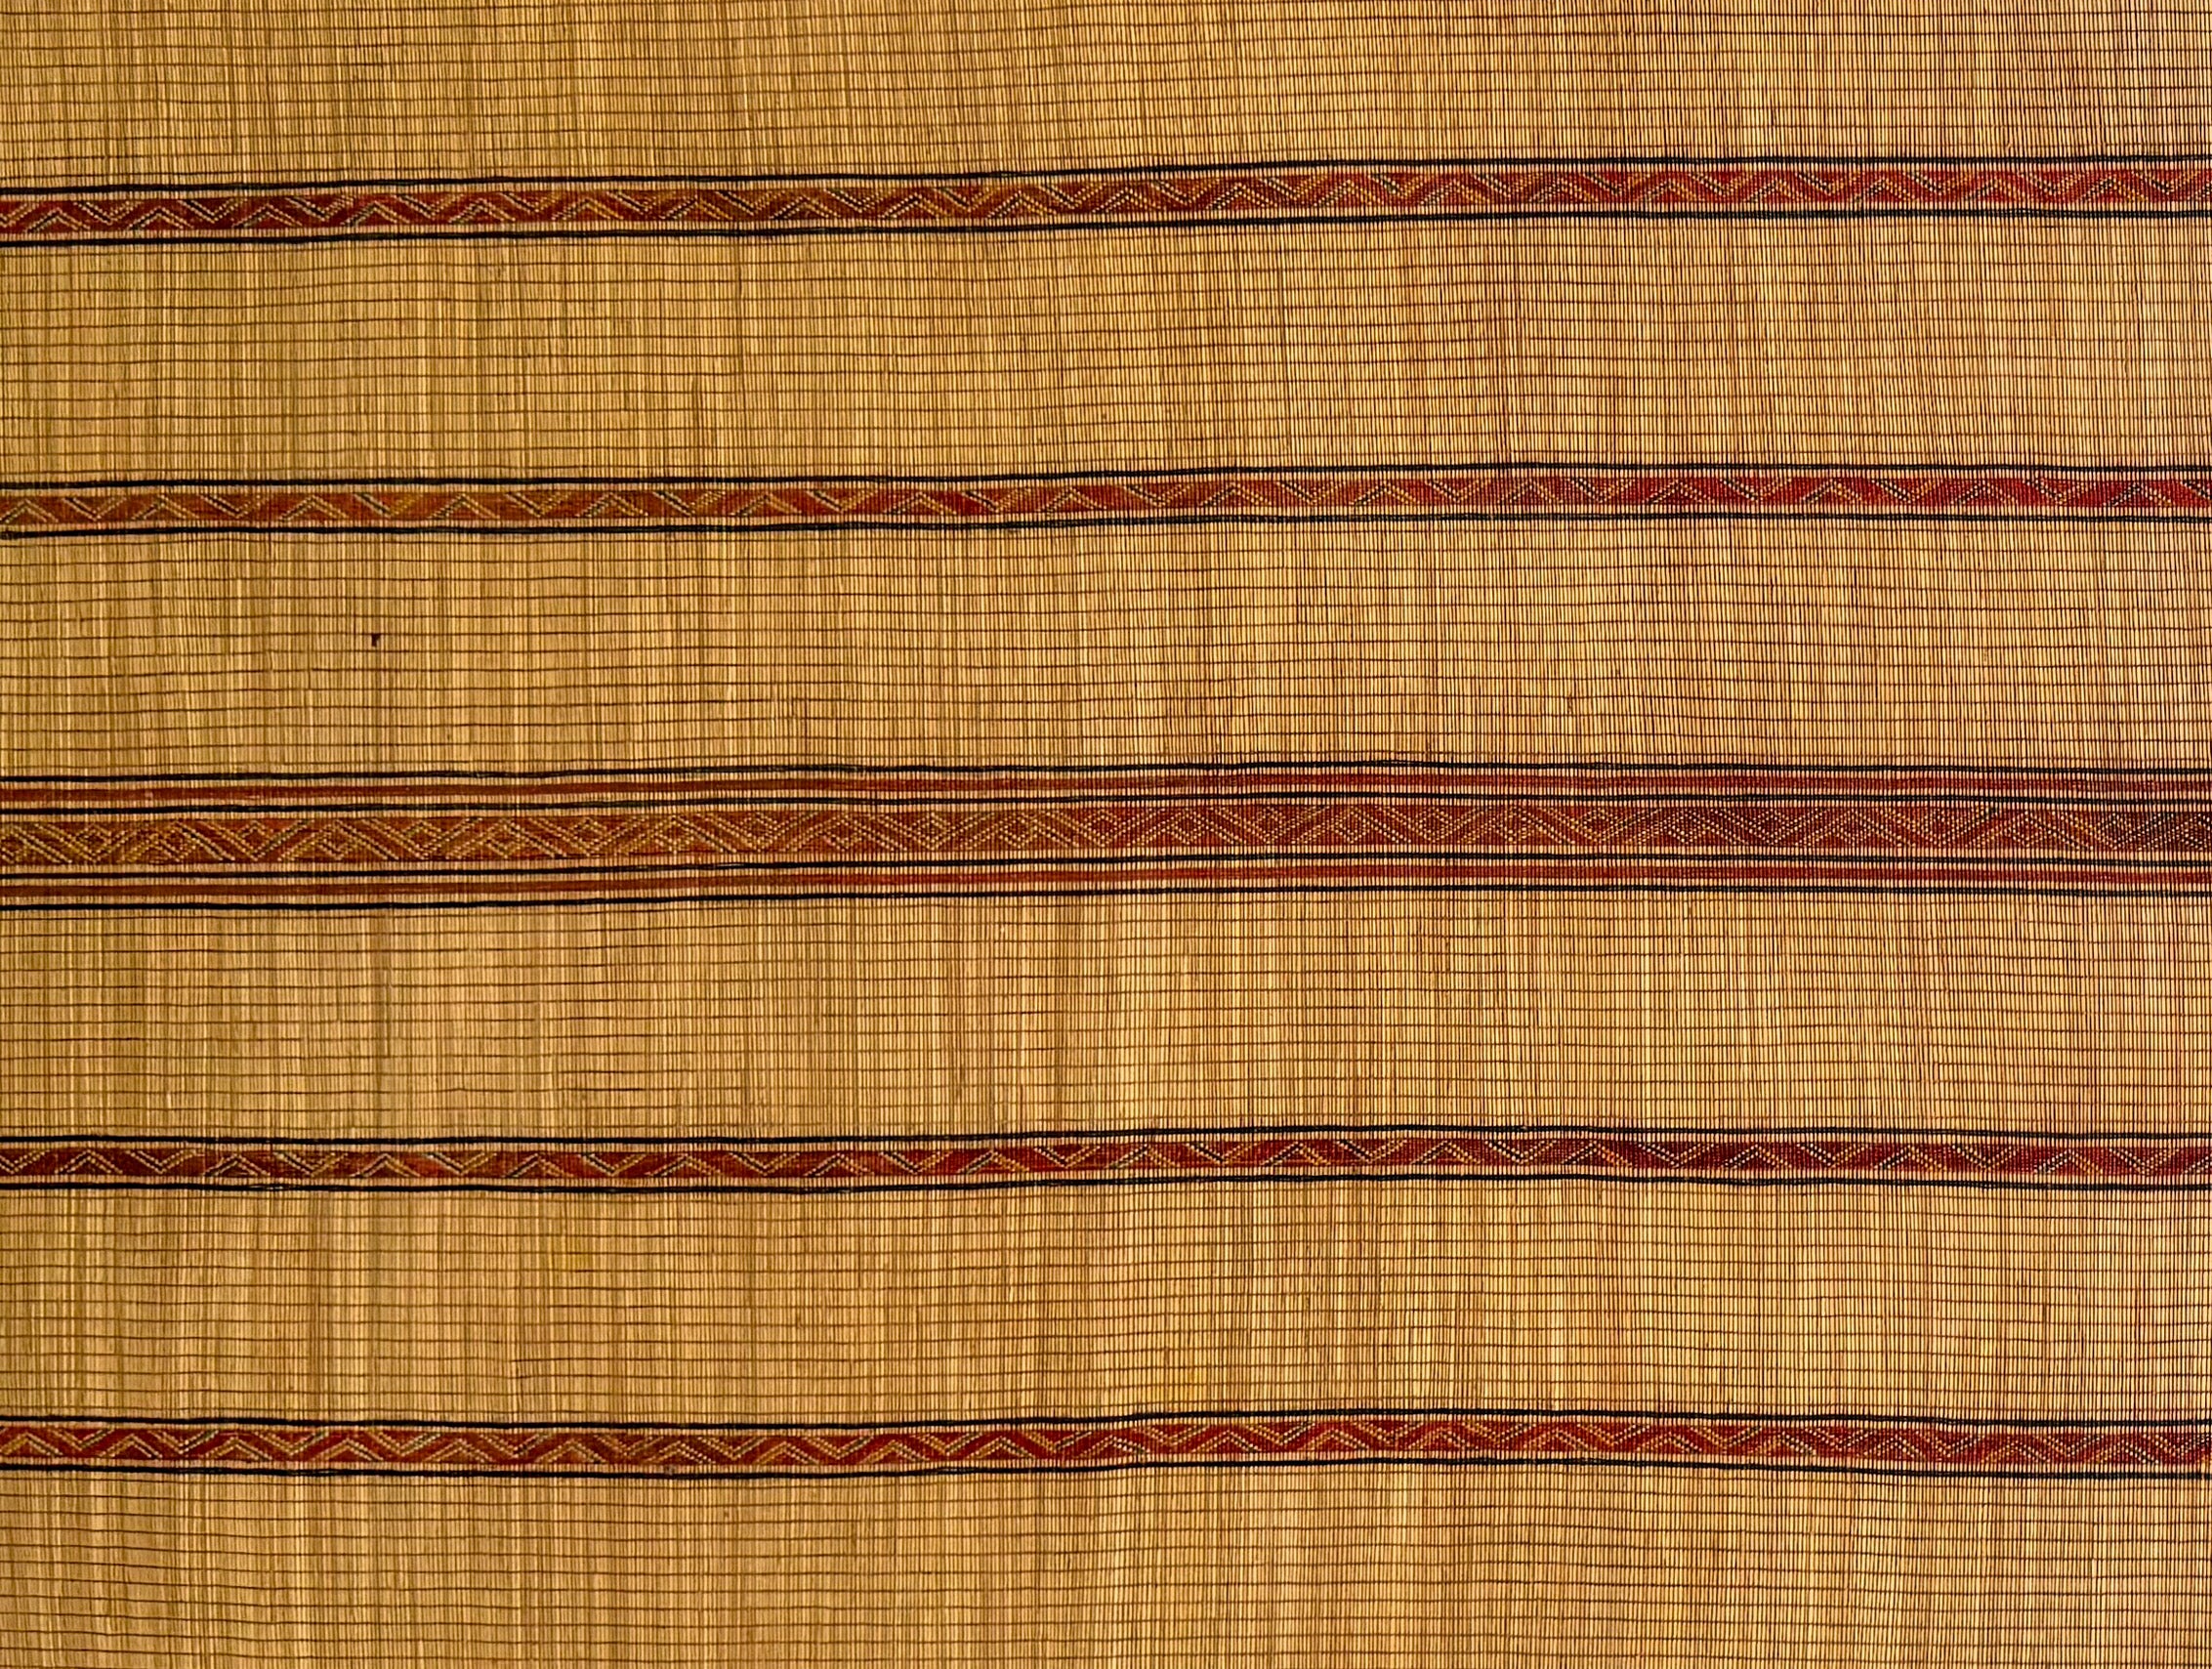 Detail of Tuareg Mat